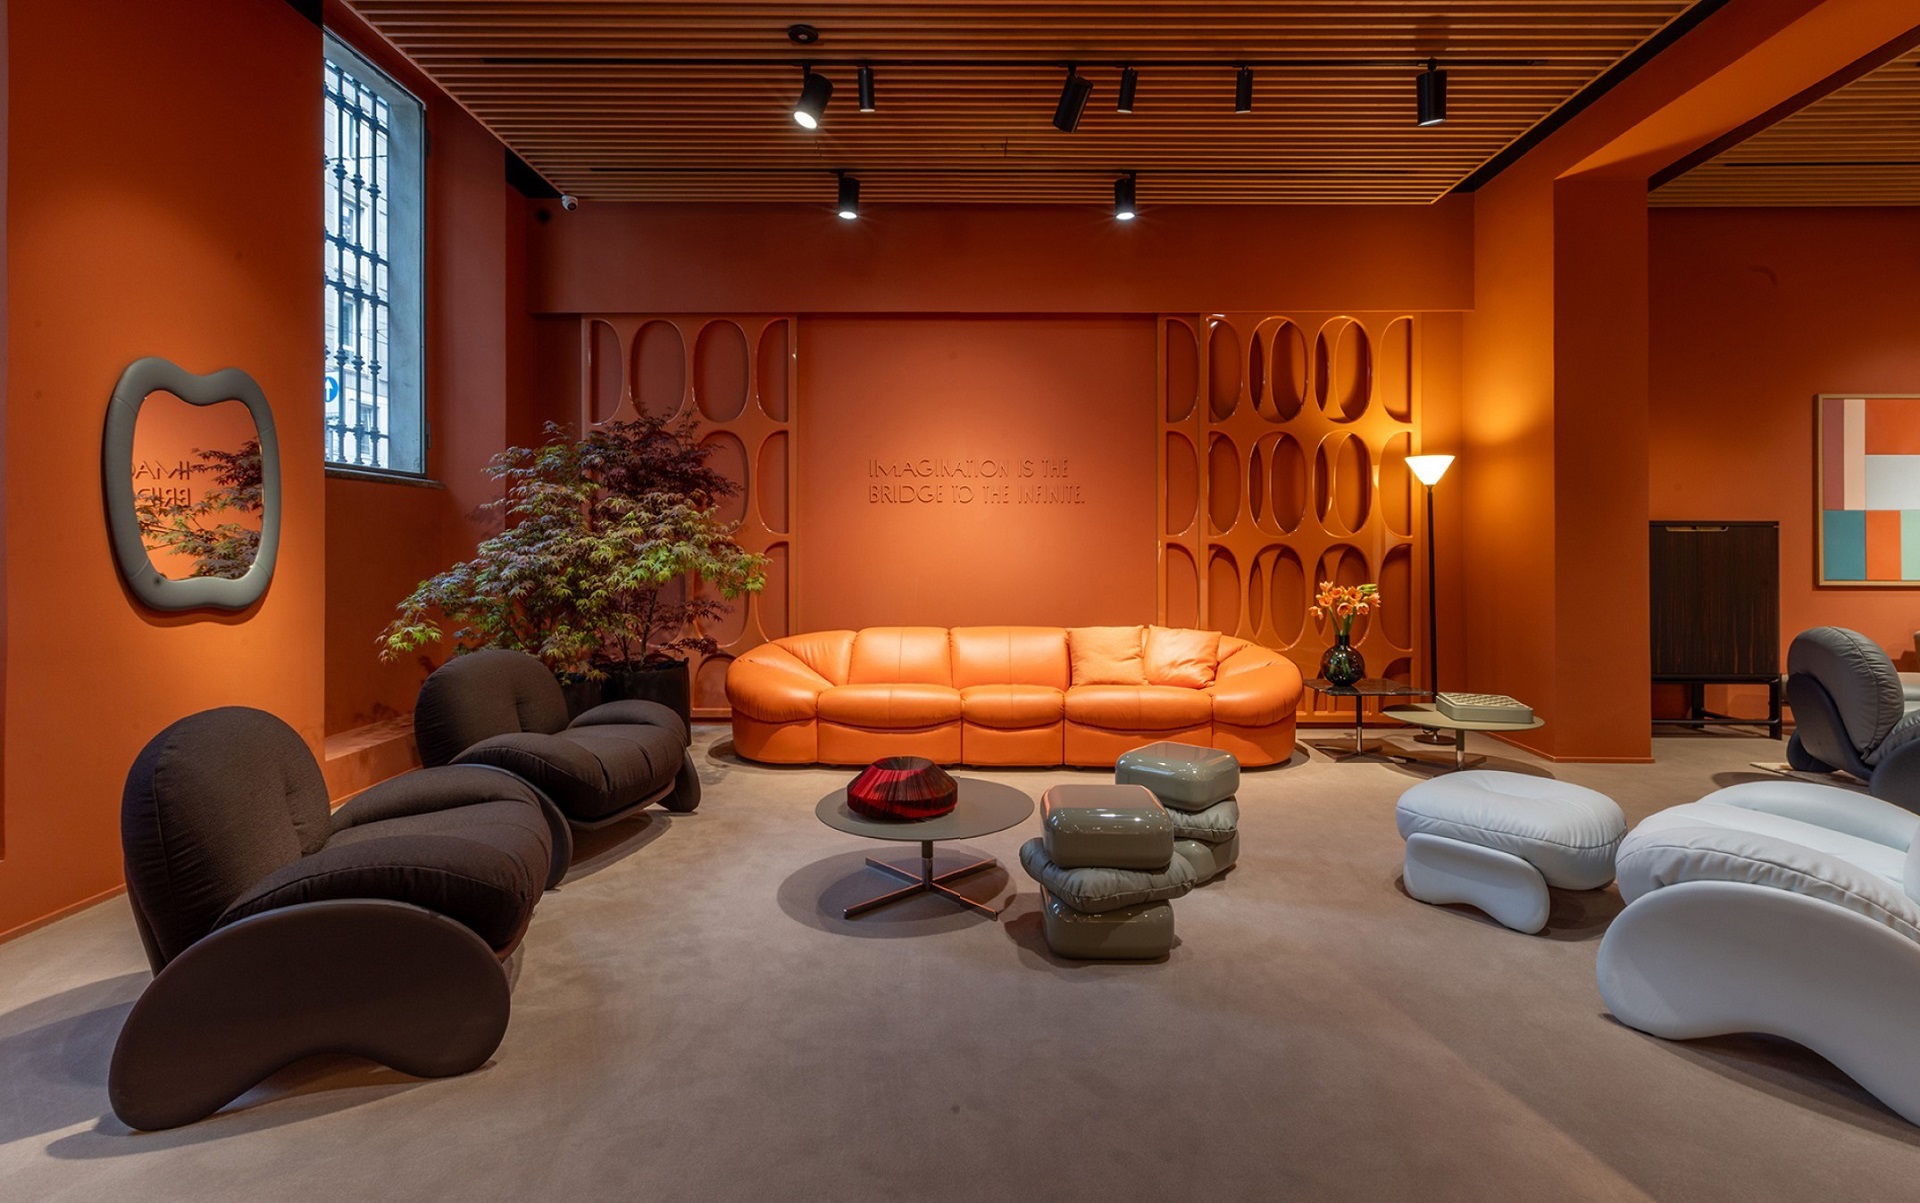 Sala de estar com estética da década de 70, com paredes em laranja e móveis em formas orgânicas